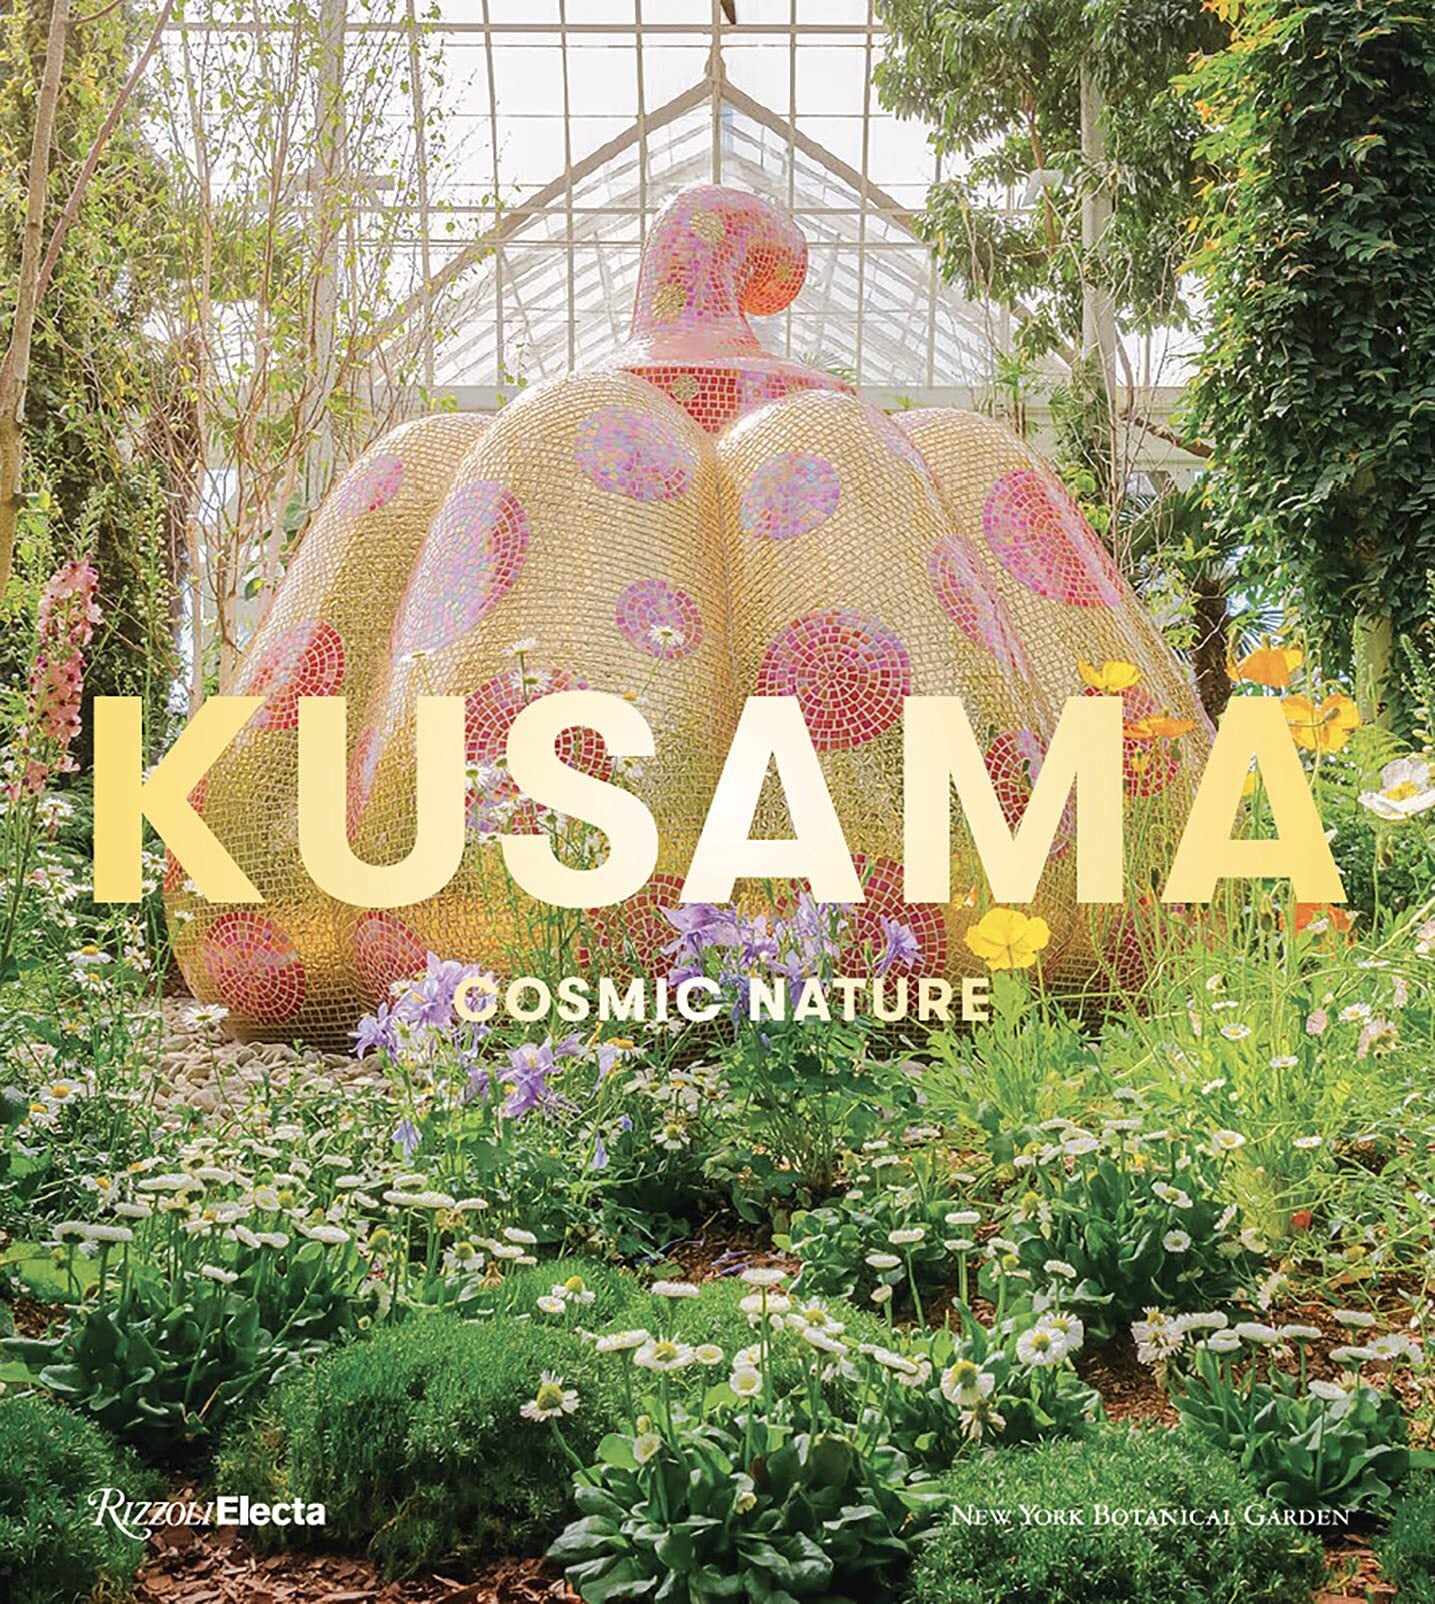 Kusama - Cosmic Nature